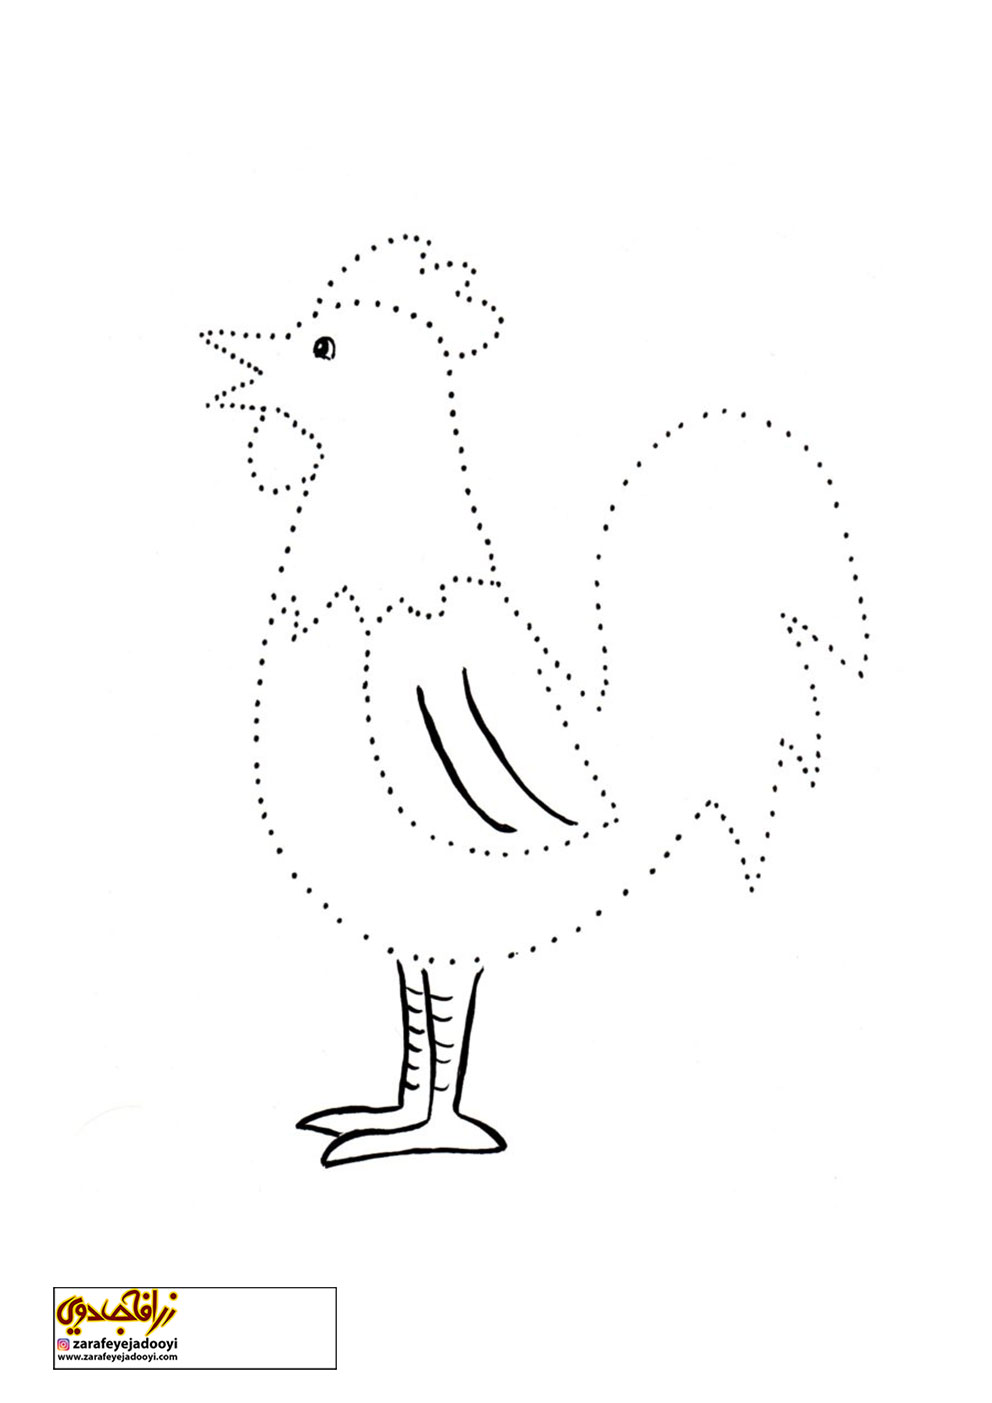 نقاشی کودکانه از مرغ و خروس